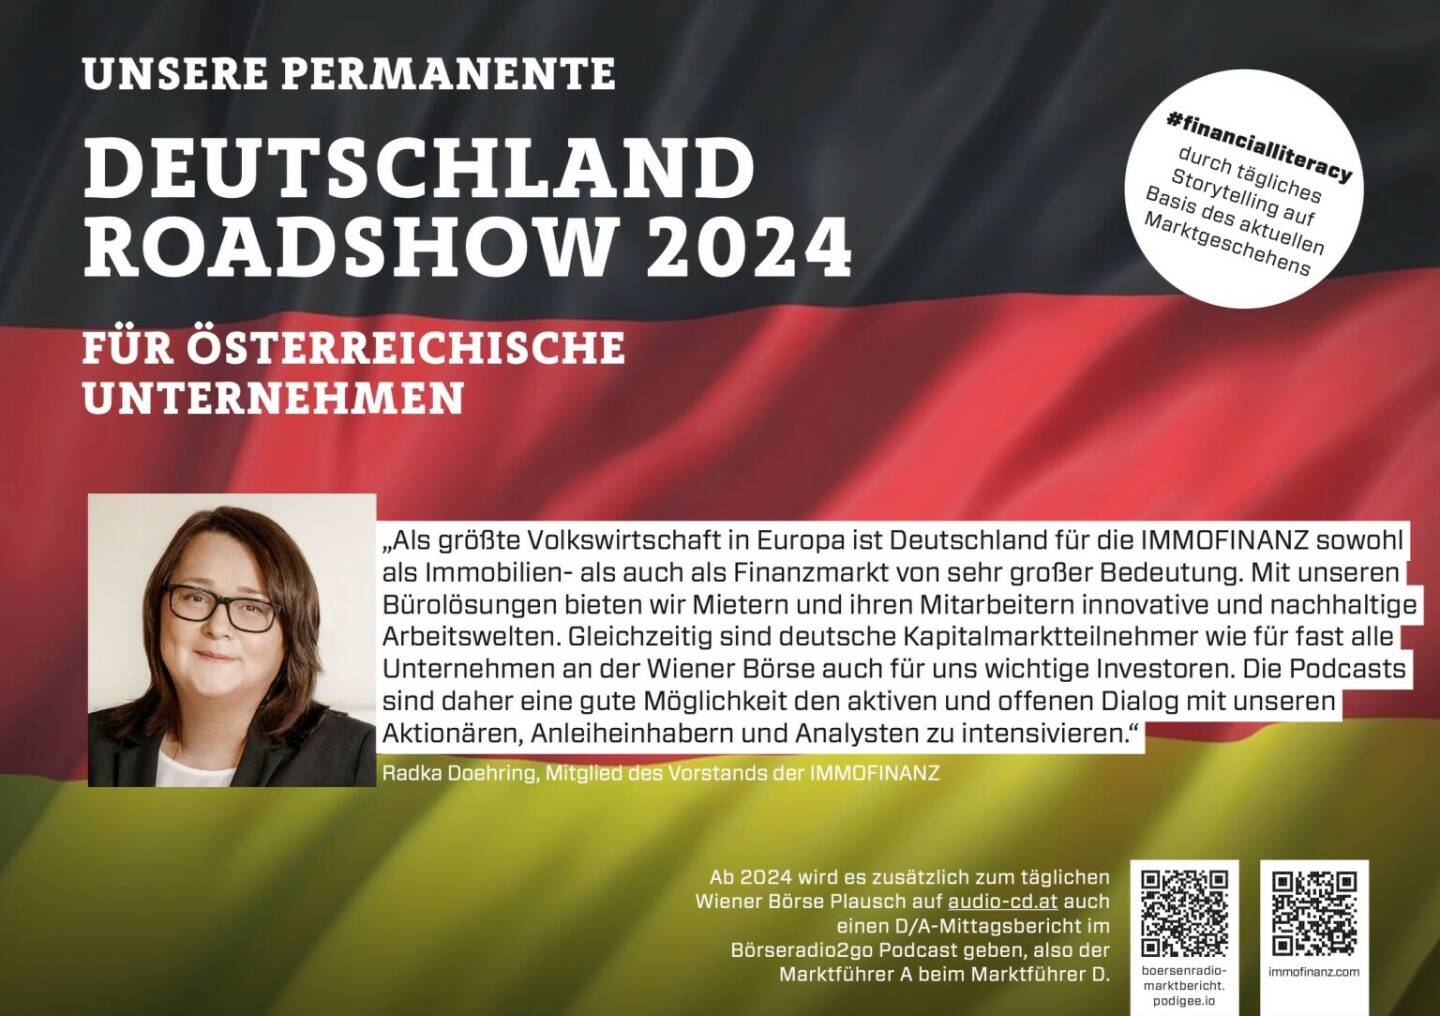 Radka Döhring mit der Immofinanz 2024 mit uns auf Deutschlandroadshow für https://boersenradio-marktbericht.podigee.io